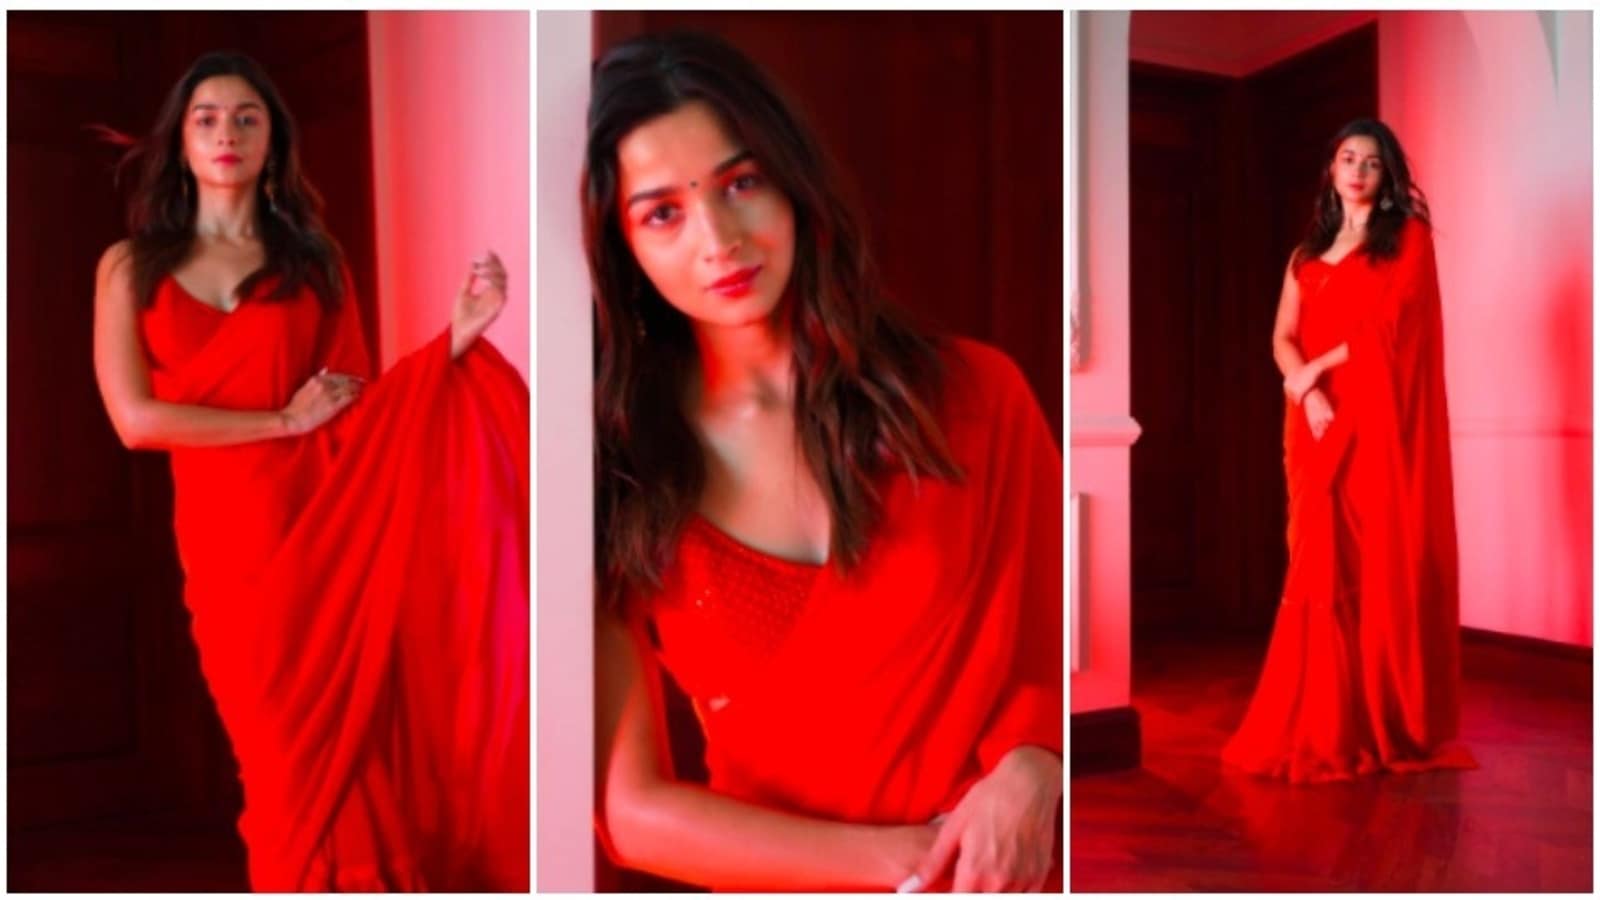 Alia Bhatt in Sabyasachi lehenga for Diwali celebration ❤️❤️ Styled by Ami  Patel! #AliaBhatt #Fashion #Style #GlamourAlert | Instagram